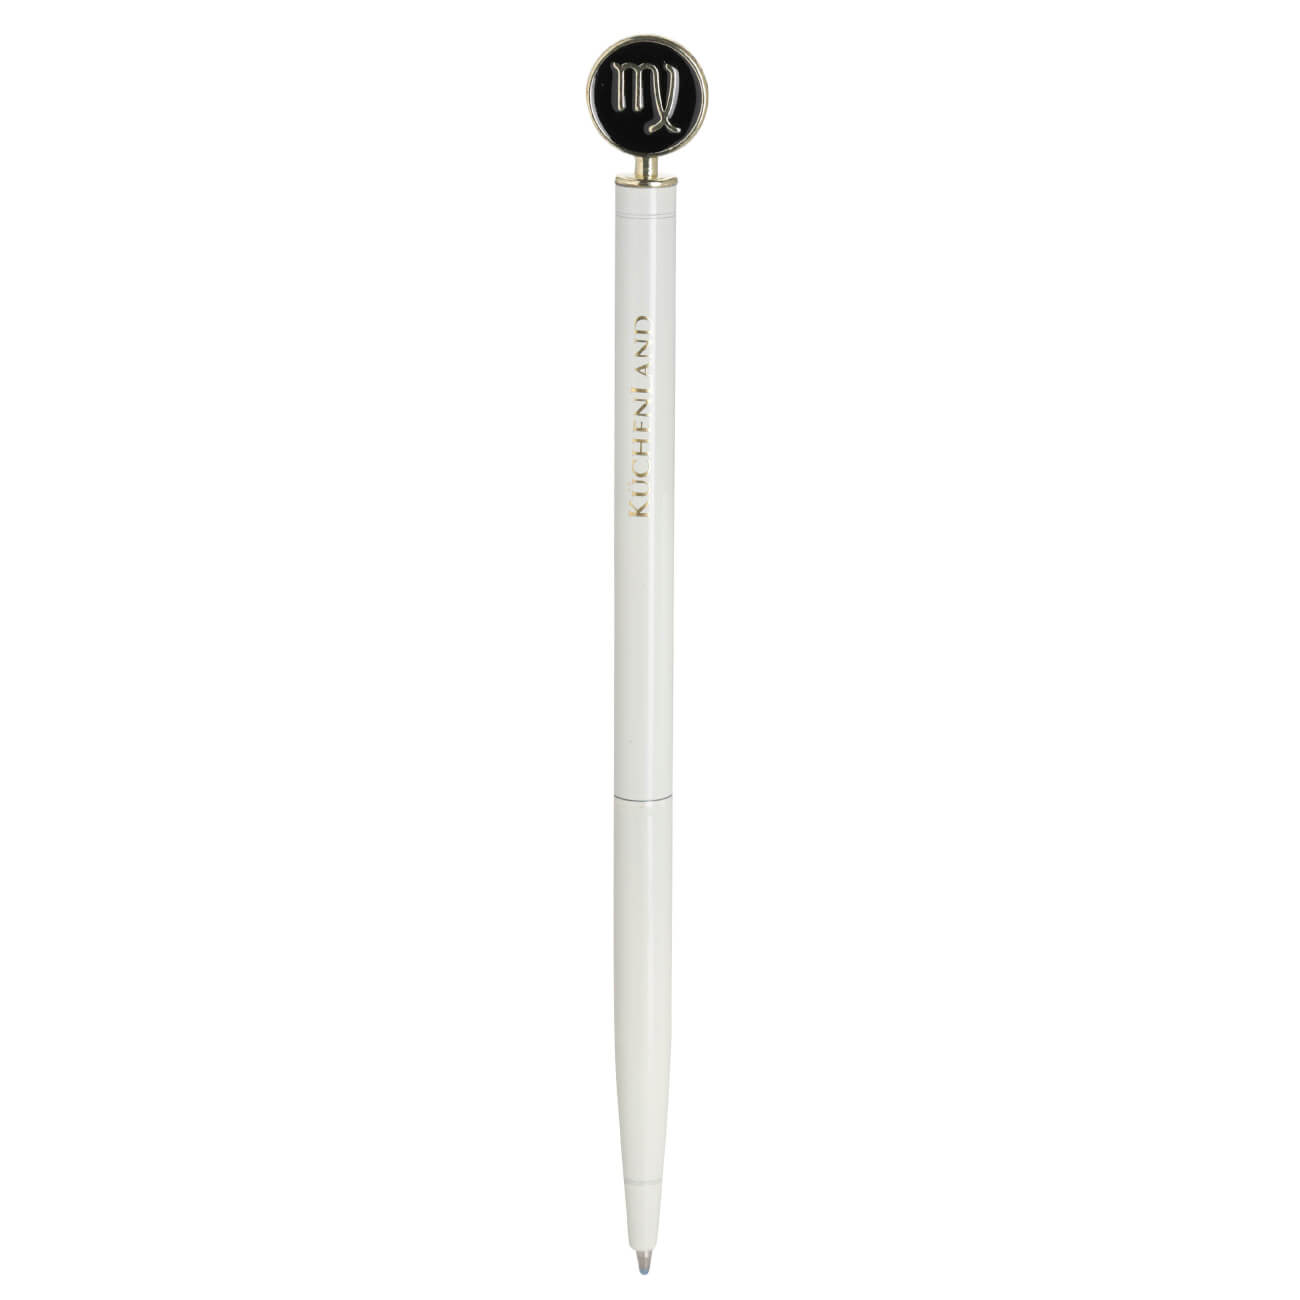 Ручка шариковая, 15 см, с фигуркой, сталь, молочно-золотистая, Дева, Zodiac ручка закладка